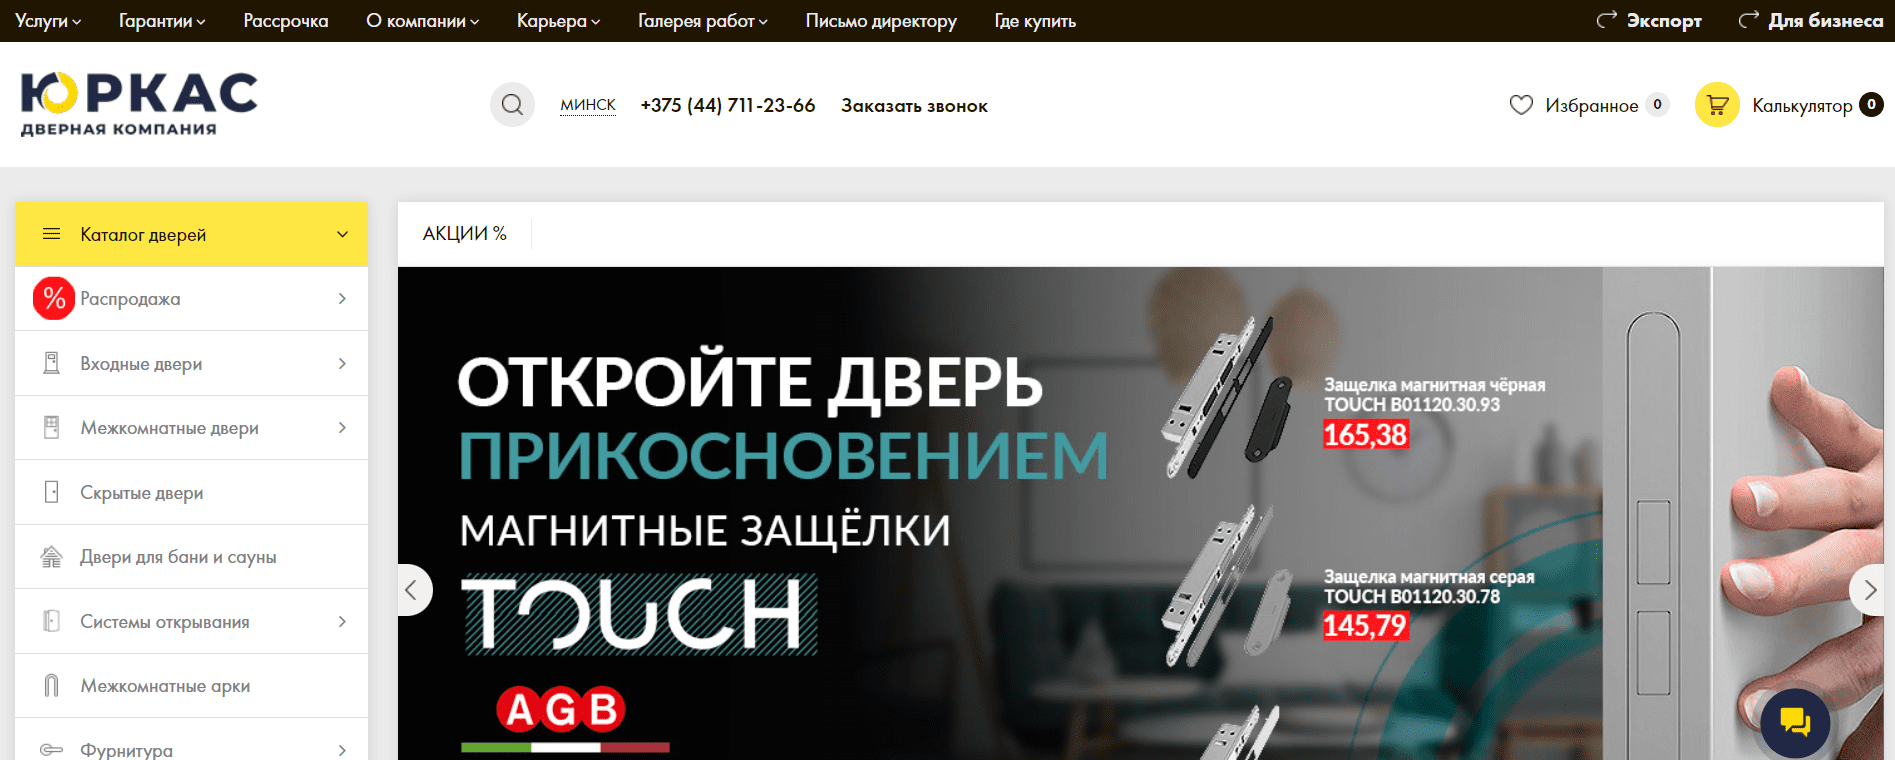 ЮРКАС (yurkas.by) - официальный сайт